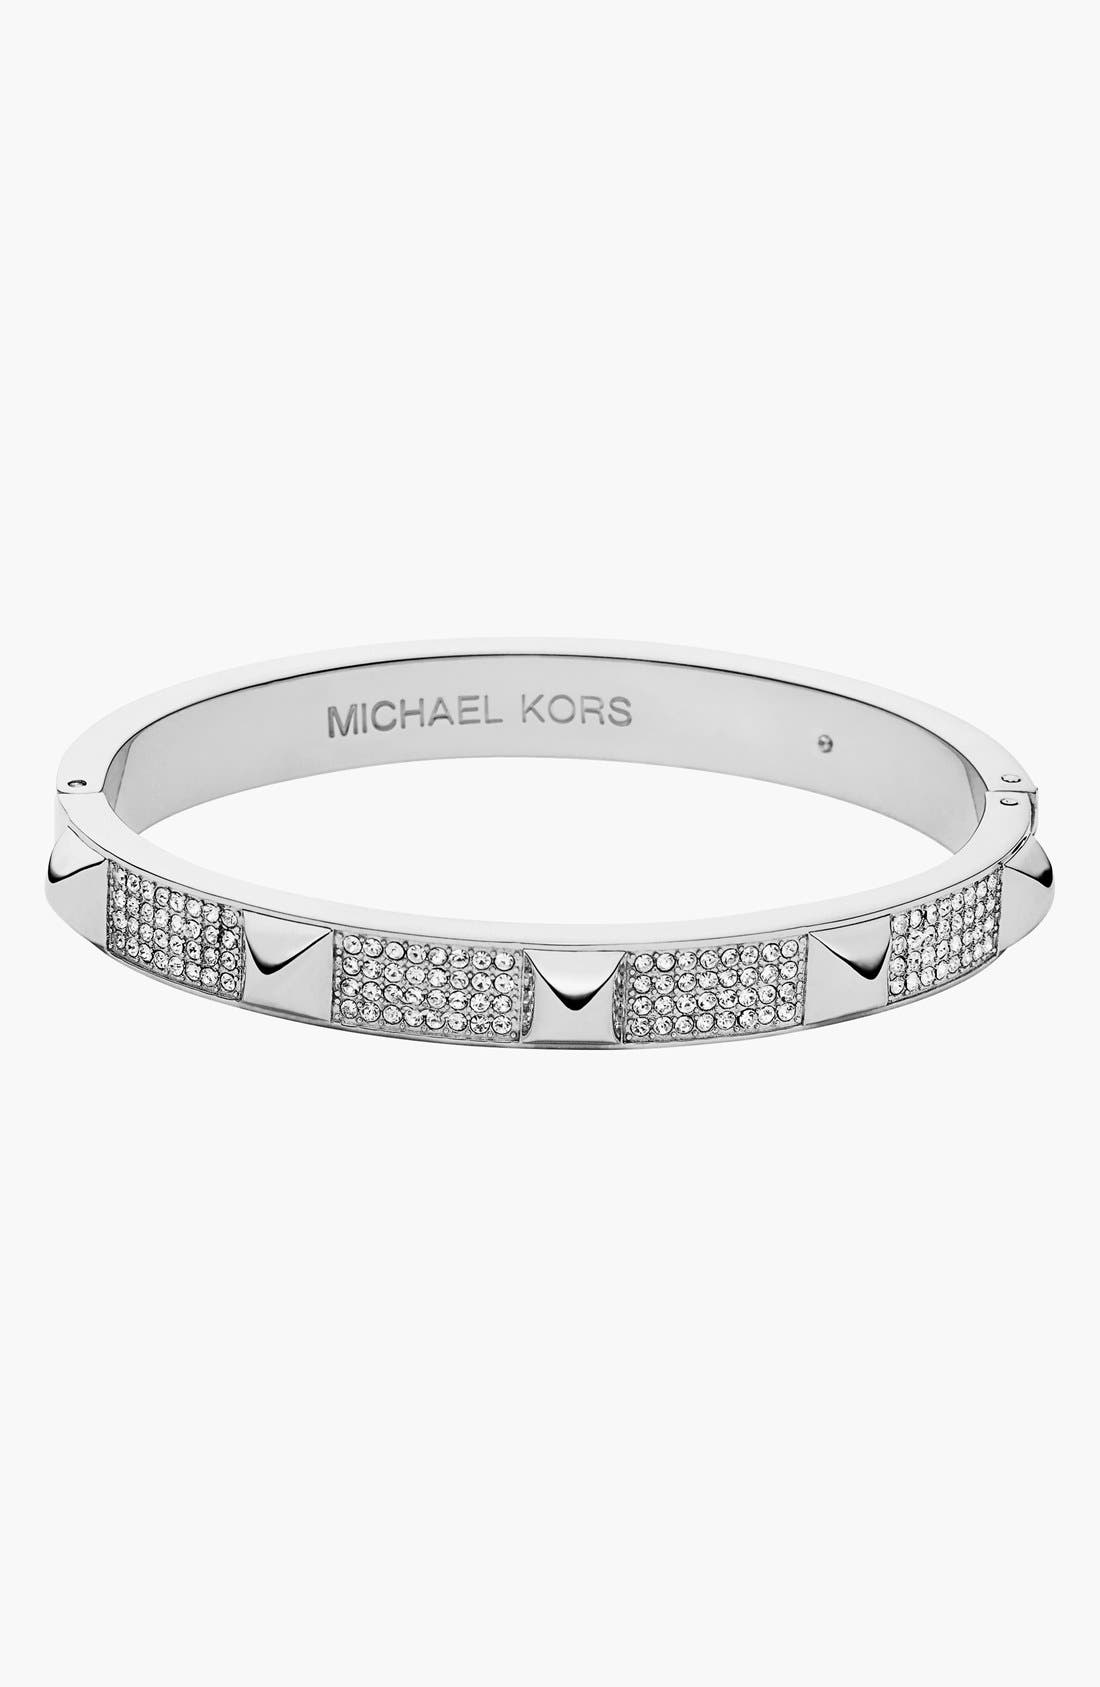 michael kors studded bracelet